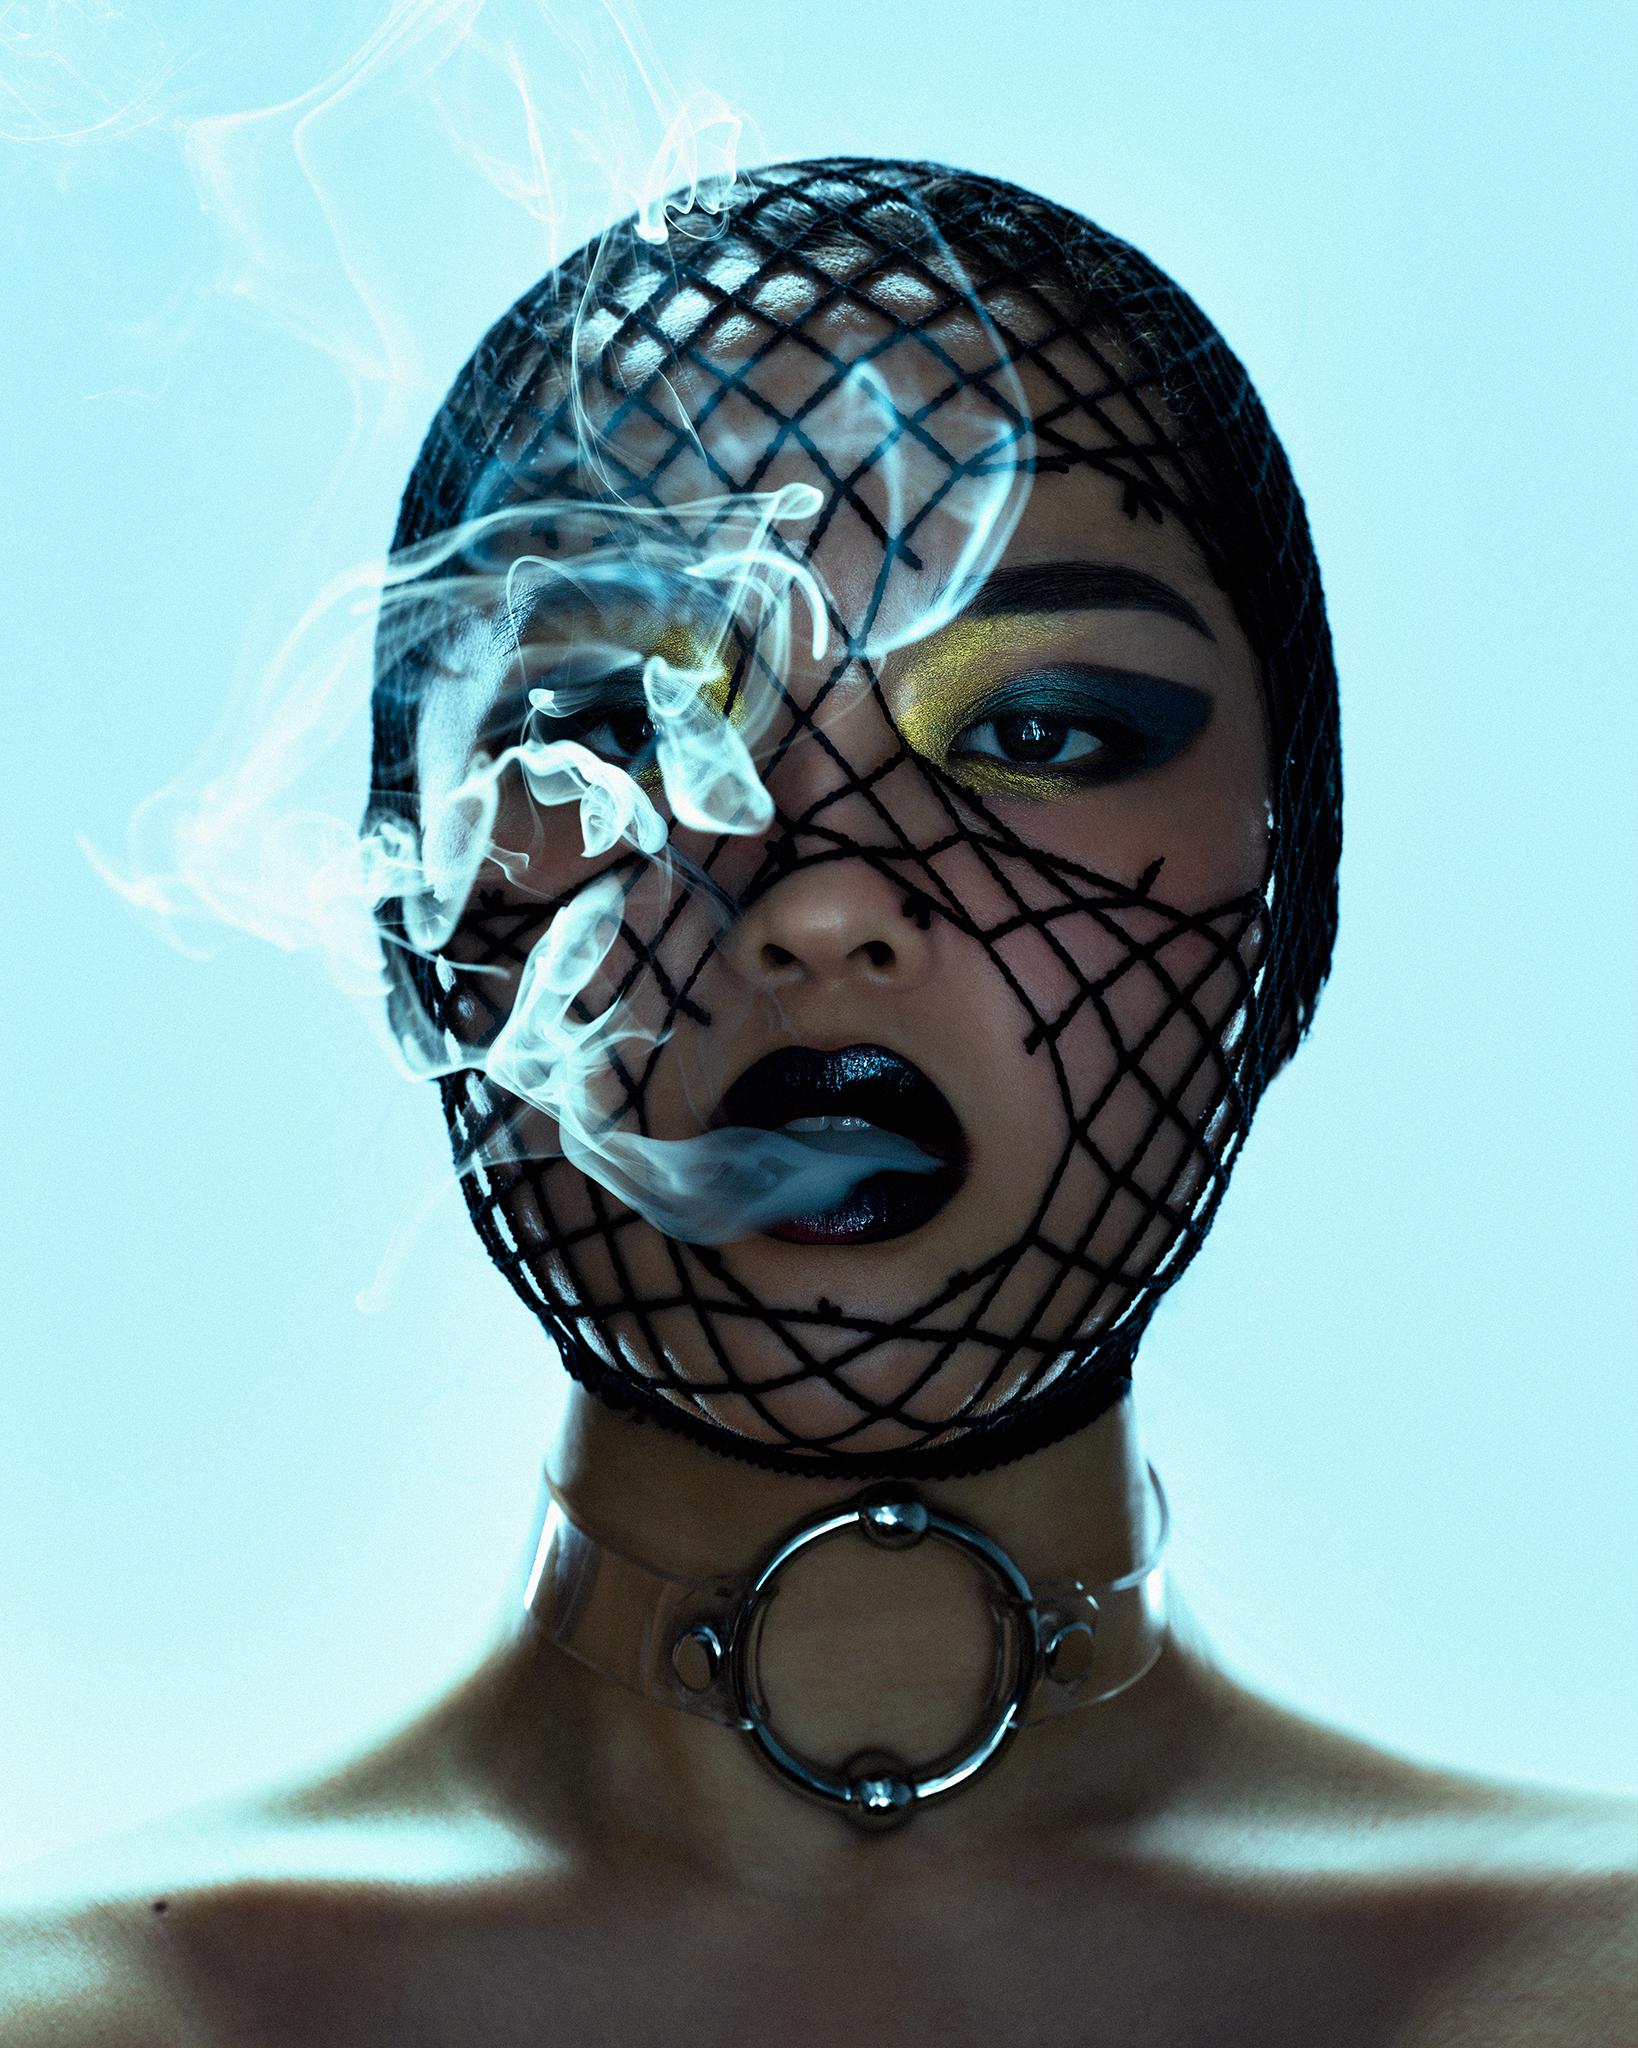 Smoking - Photograph by Markus Klinko